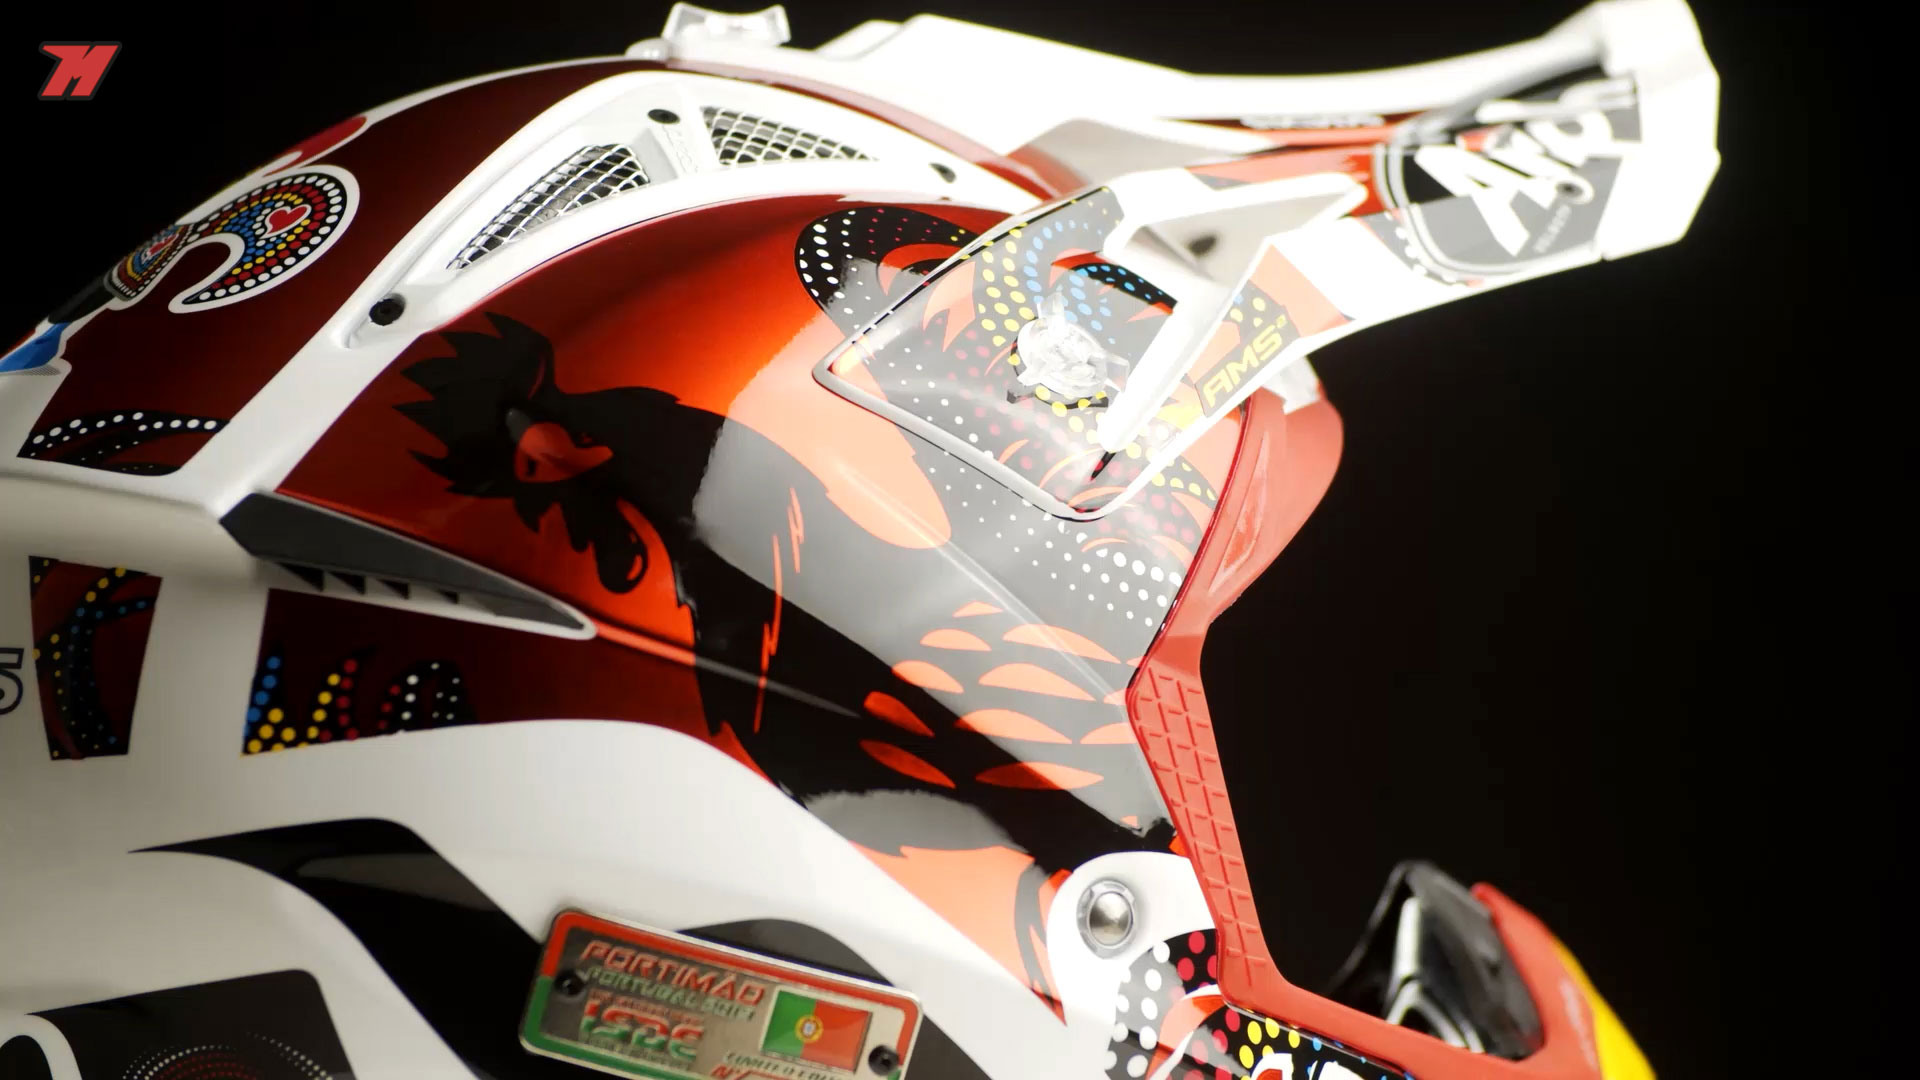 CÓMO ELEGIR un casco de motocross o enduro. ¡TRUCOS Y CONSEJOS! 😎 